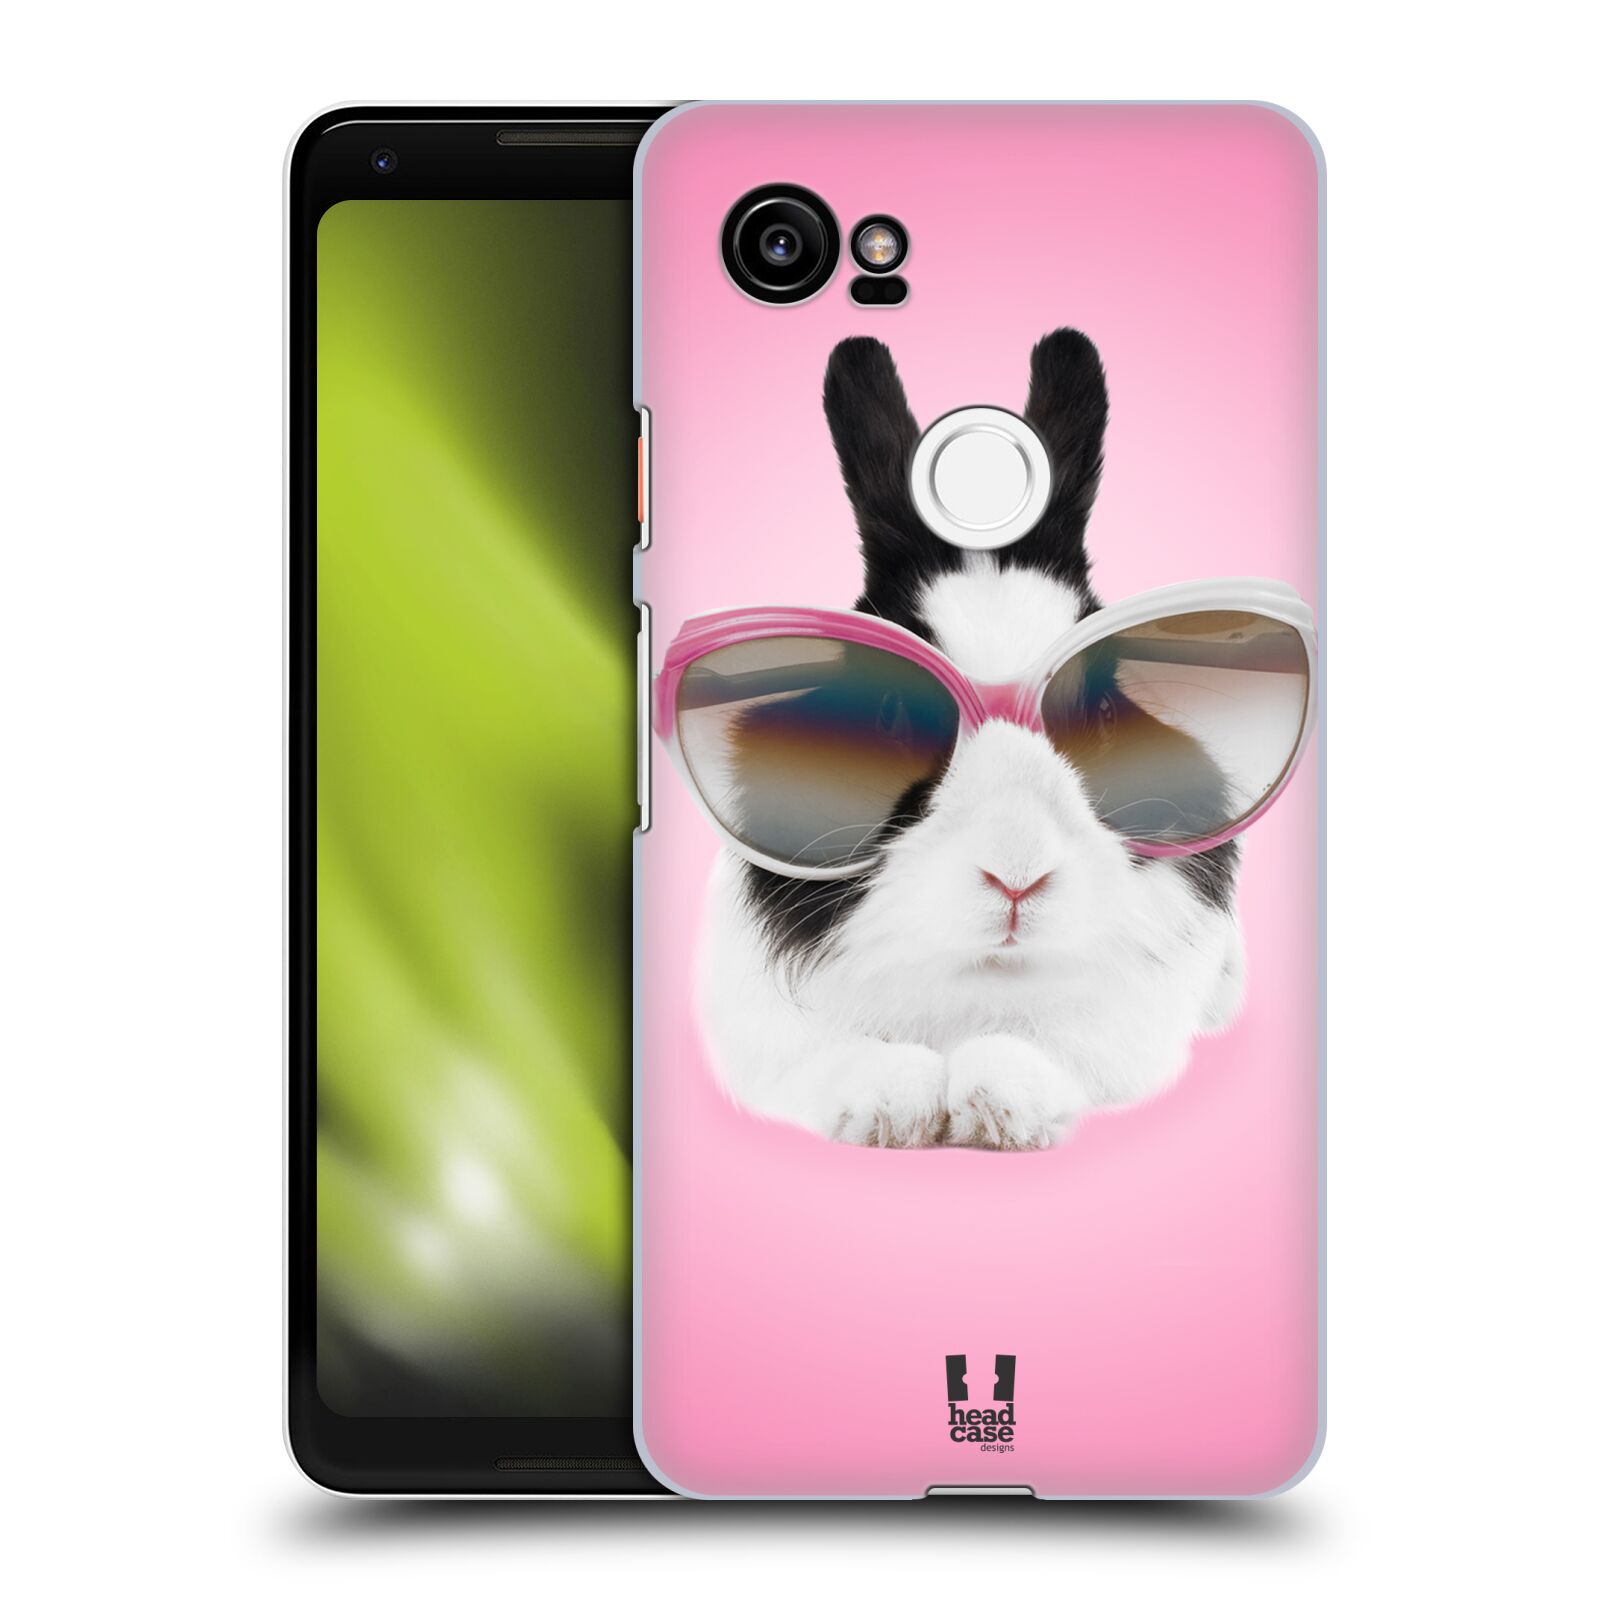 HEAD CASE plastový obal na mobil Google Pixel 2 XL vzor Legrační zvířátka roztomilý králíček s brýlemi růžová